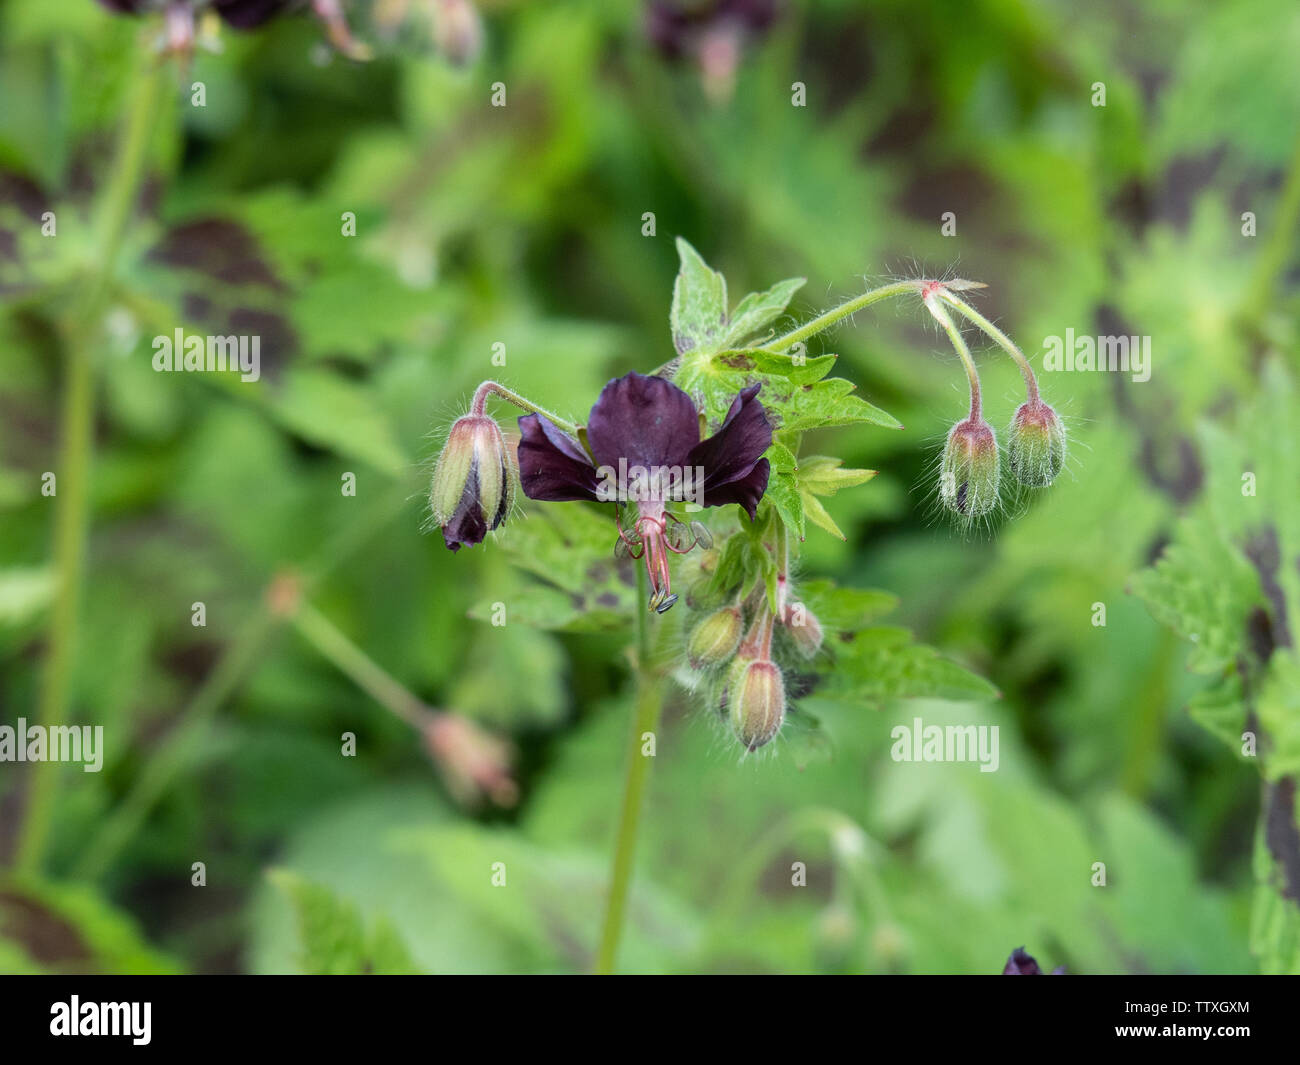 A close up of the chocolate coloured flowers of Geranium phaeum Samobor Stock Photo